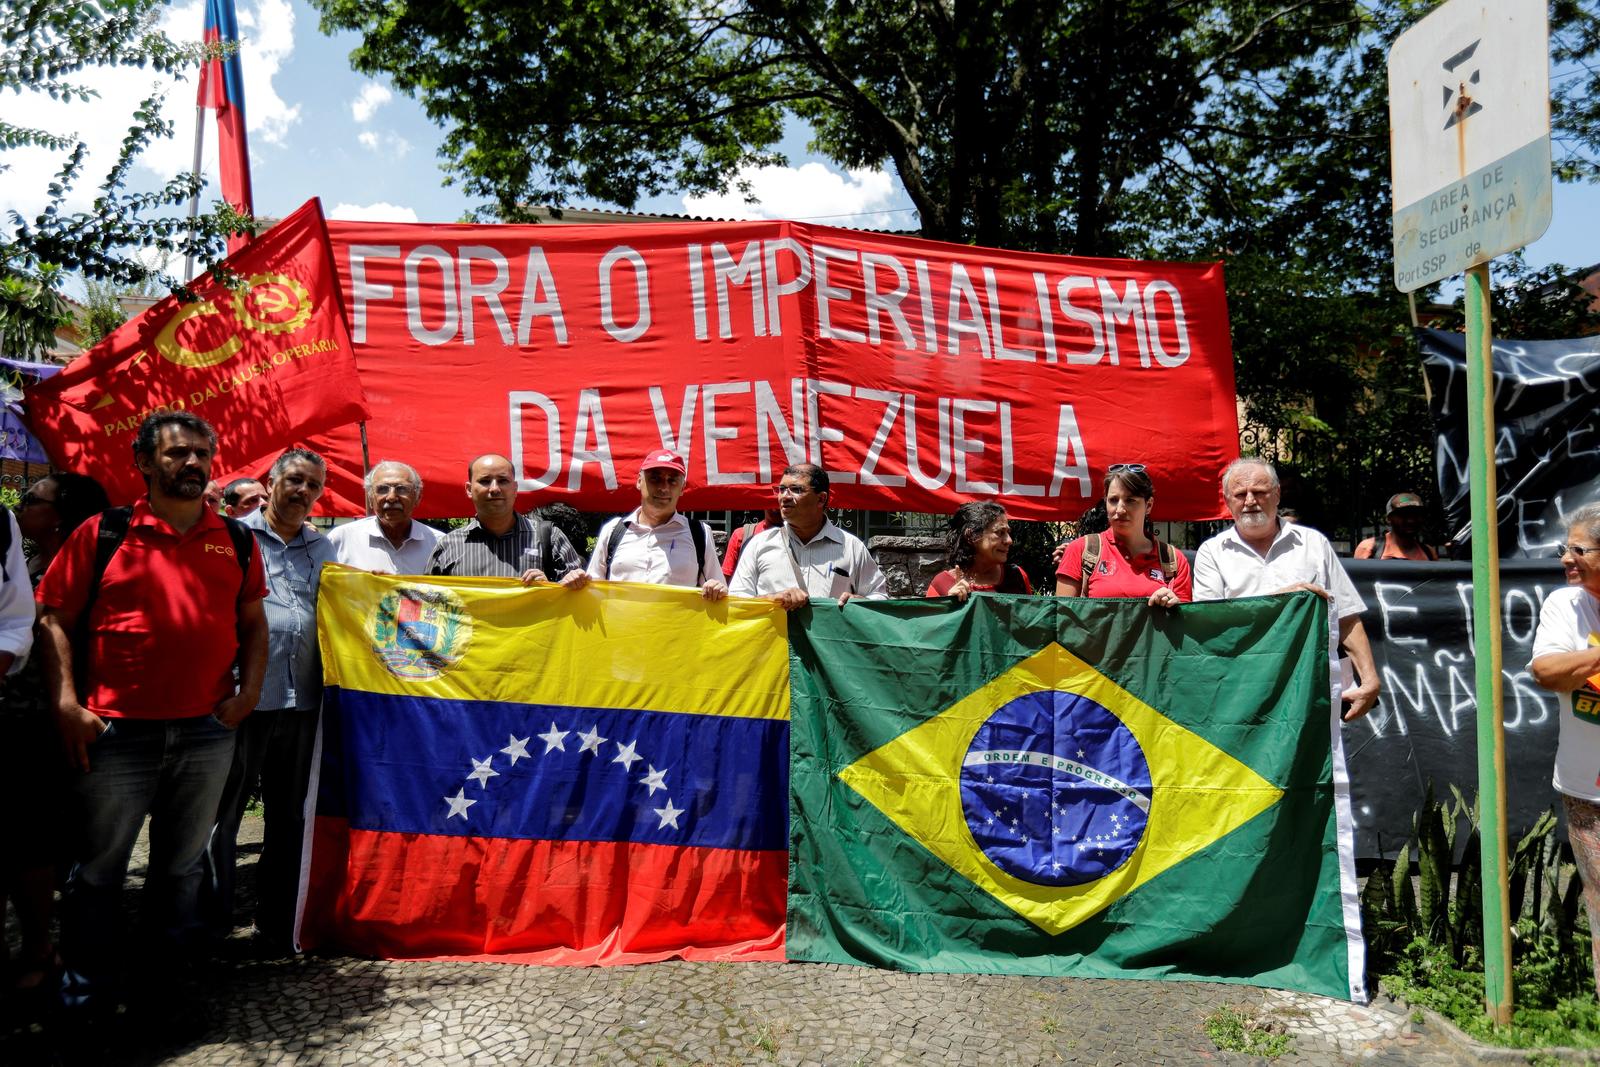 Apoyo. No todos están contra Maduro, aquí se observa una manifestación de apoyo al presidente de Venezuela.